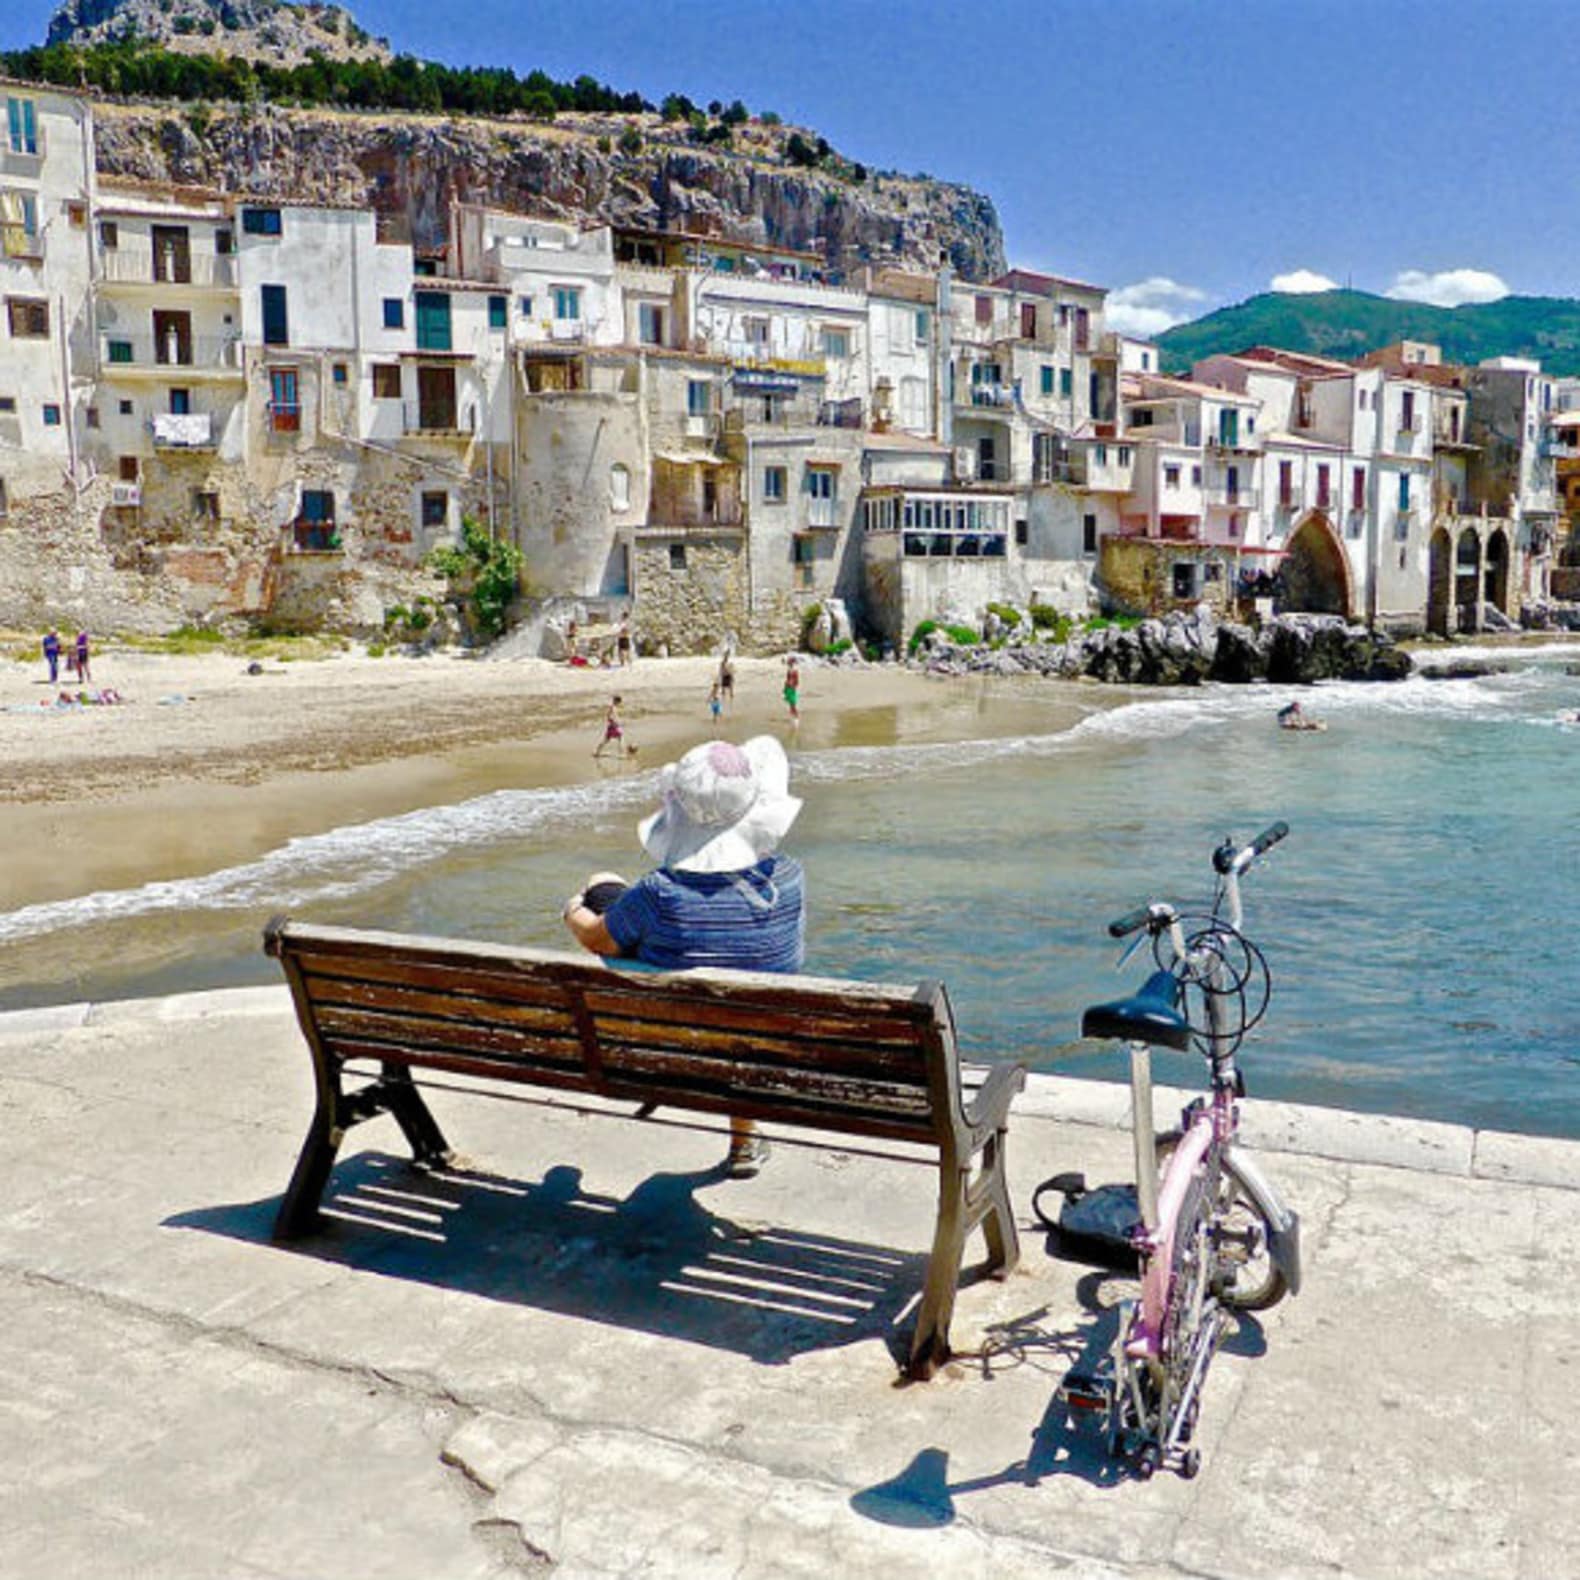 Banc face à la mer, plage, village Sicile, vacances mer pas cher